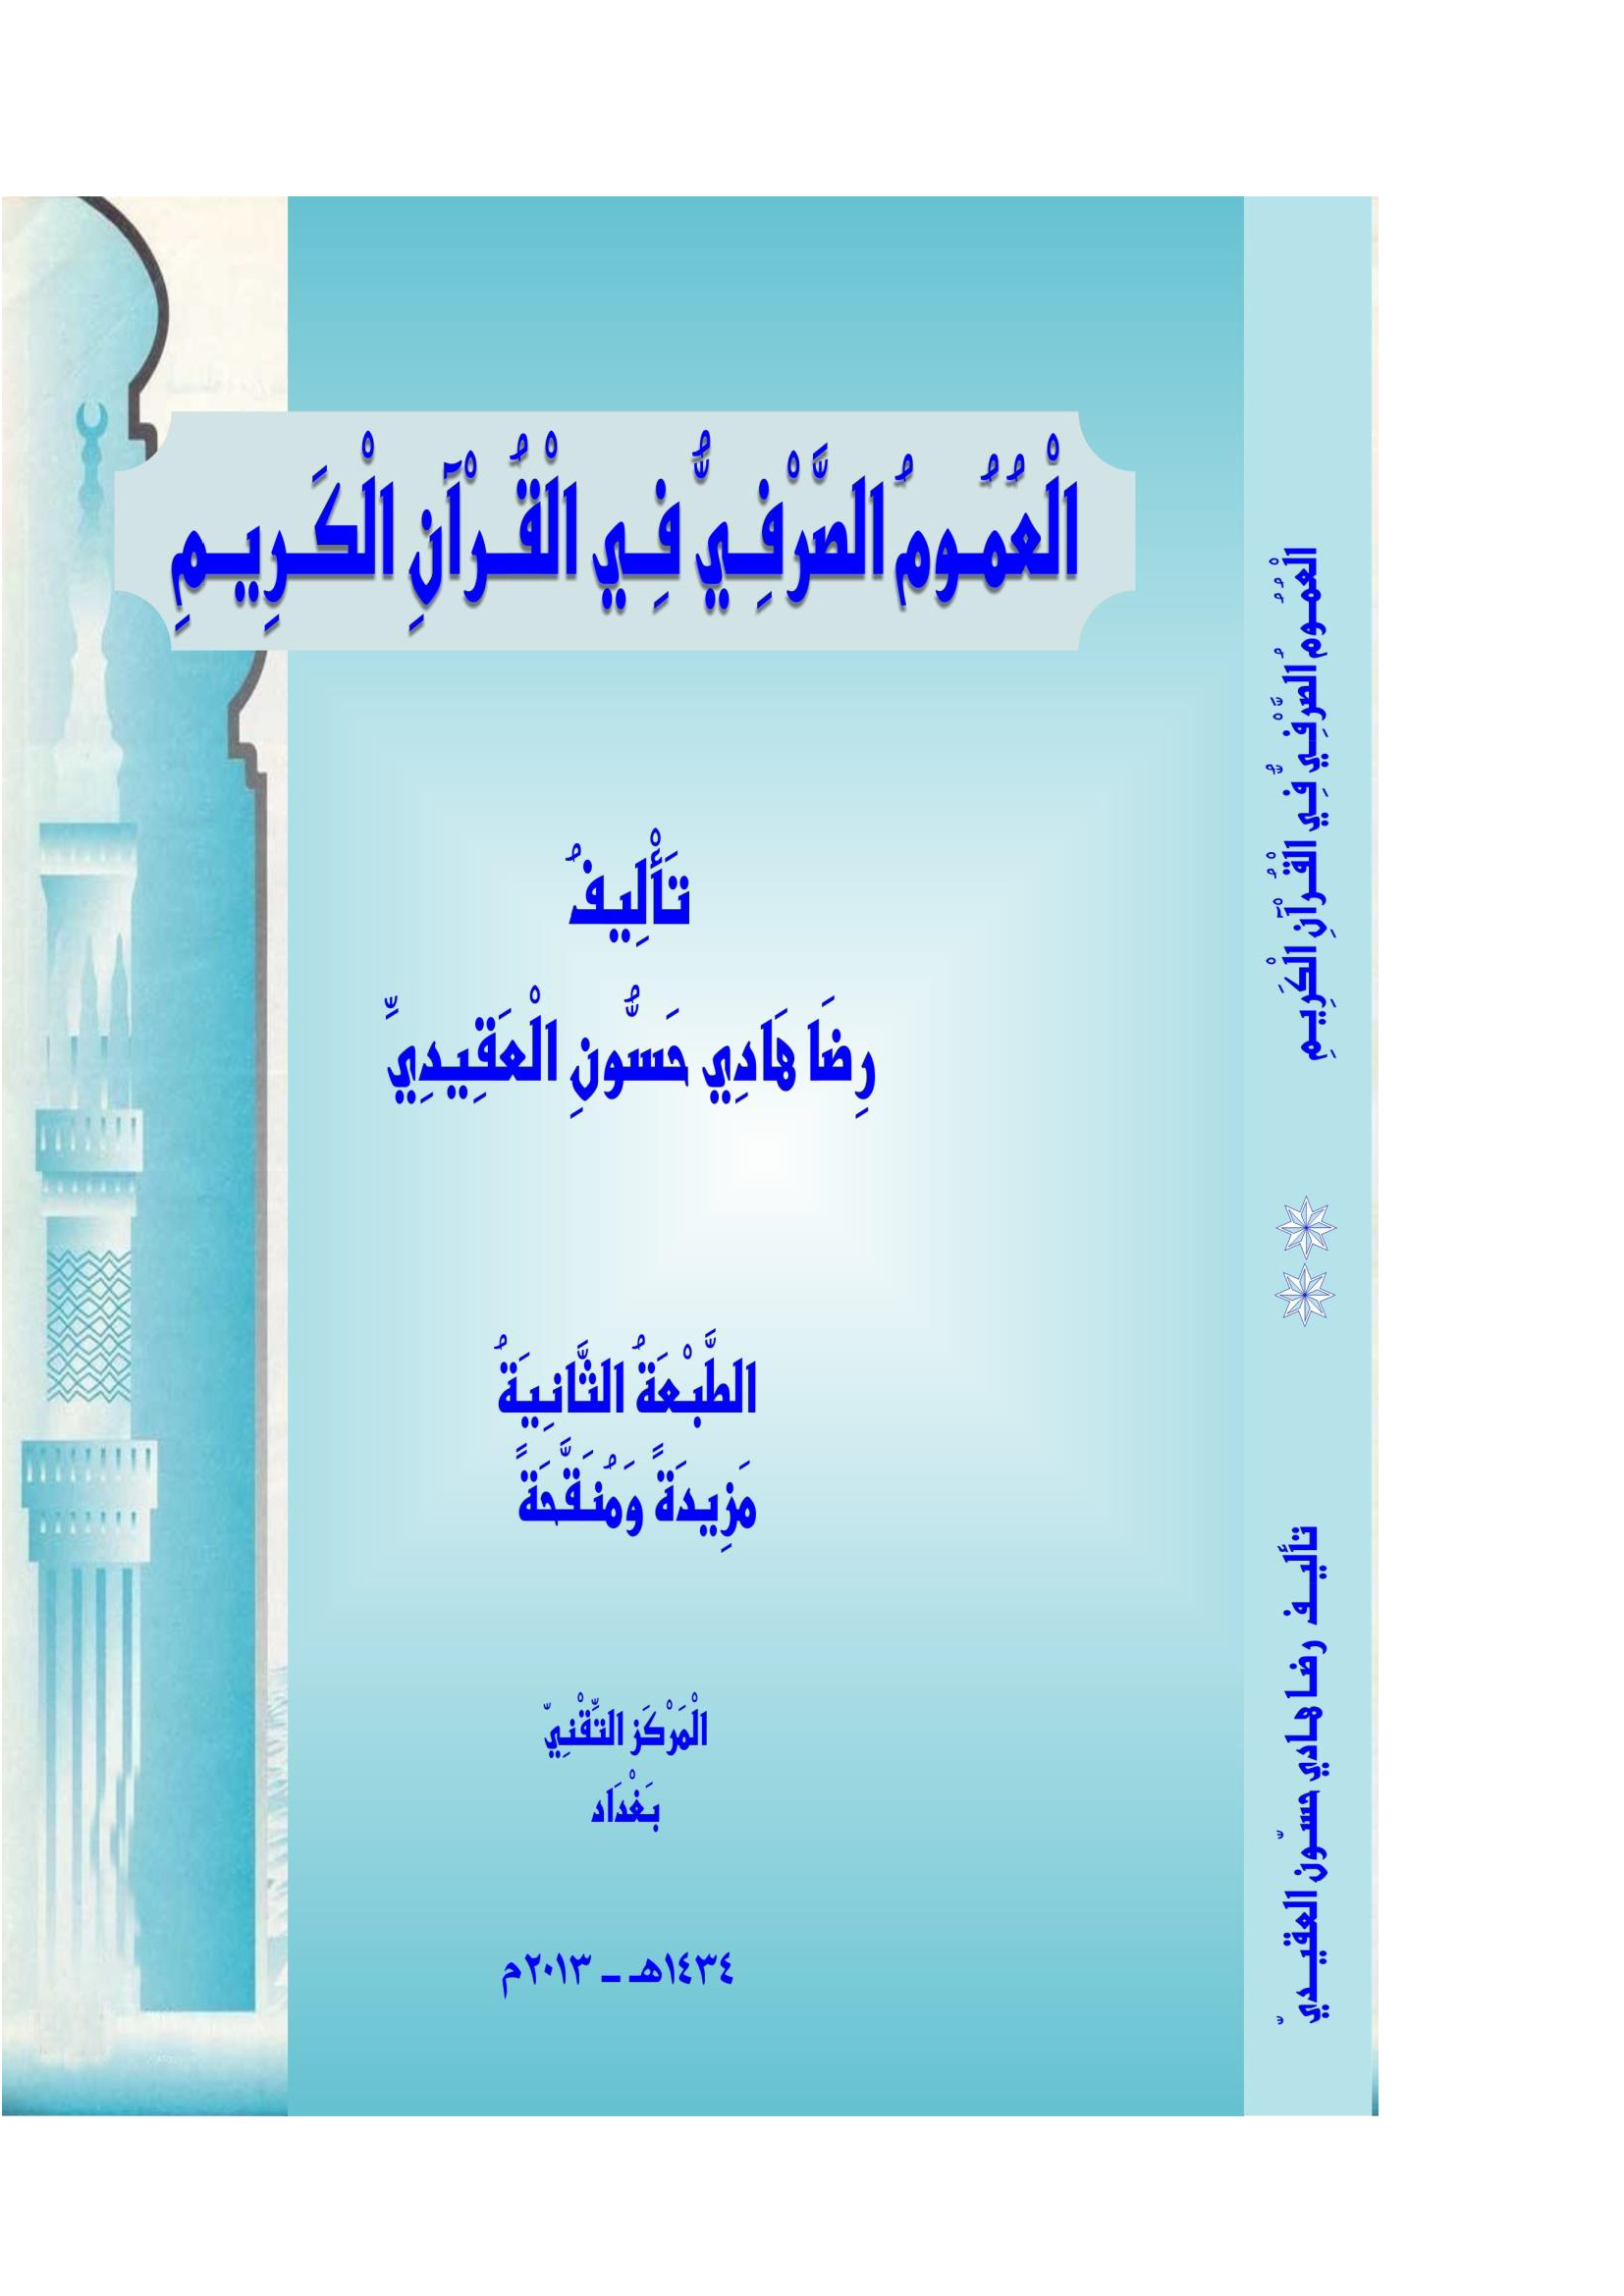 تحميل كتاب العموم الصرفي في القرآن الكريم للمؤلف: رضا هادي حسون العقيدي